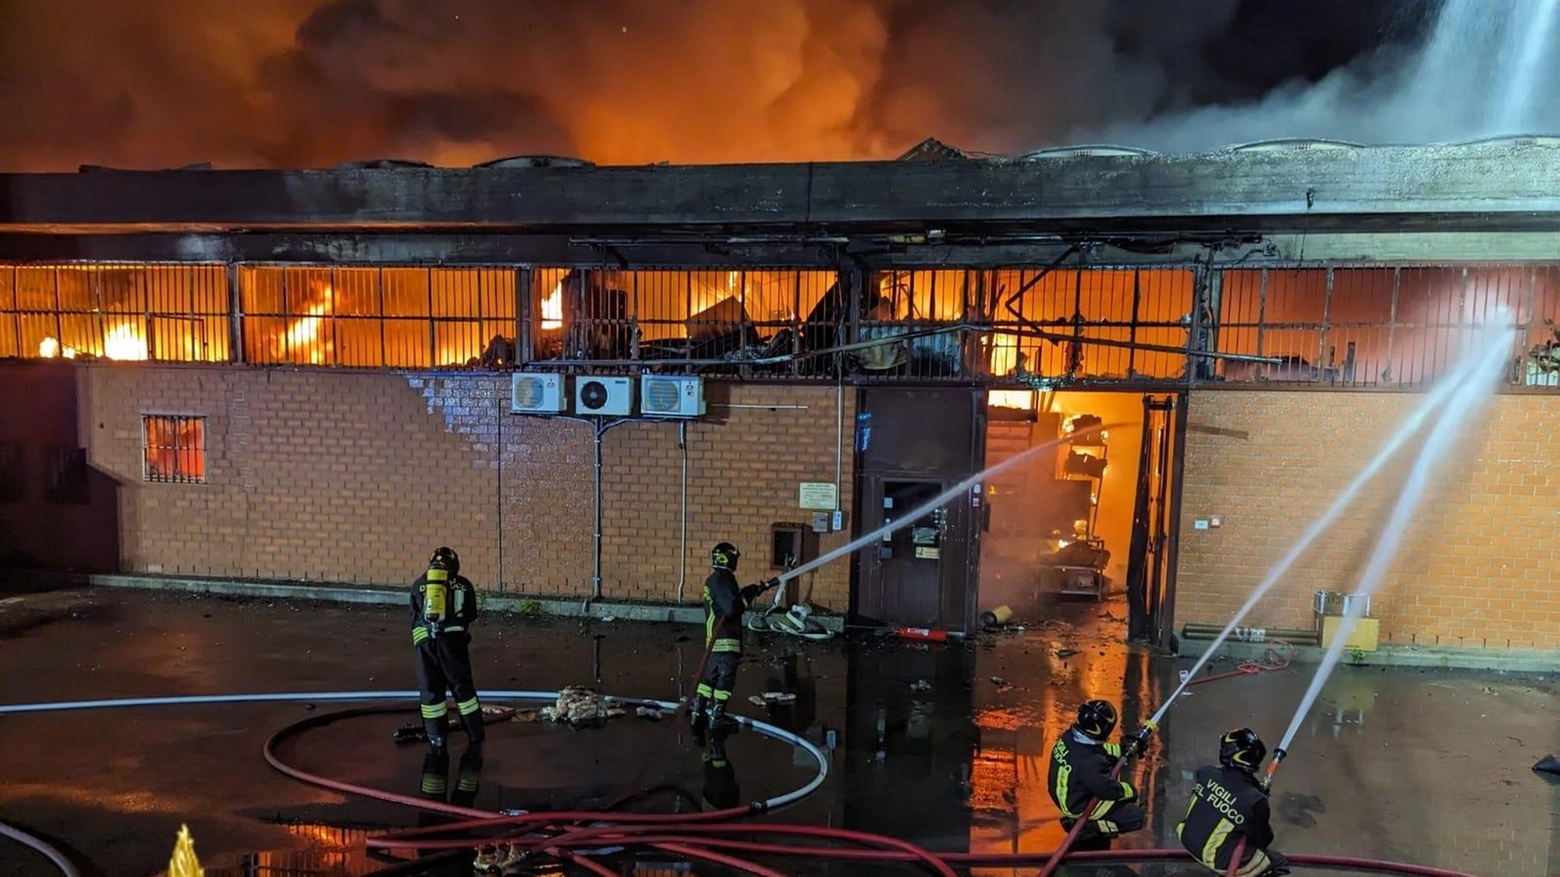 

Vasto incendio a Poggio a Caiano: Aiuti da Pistoia per Spegnere le Fiamme